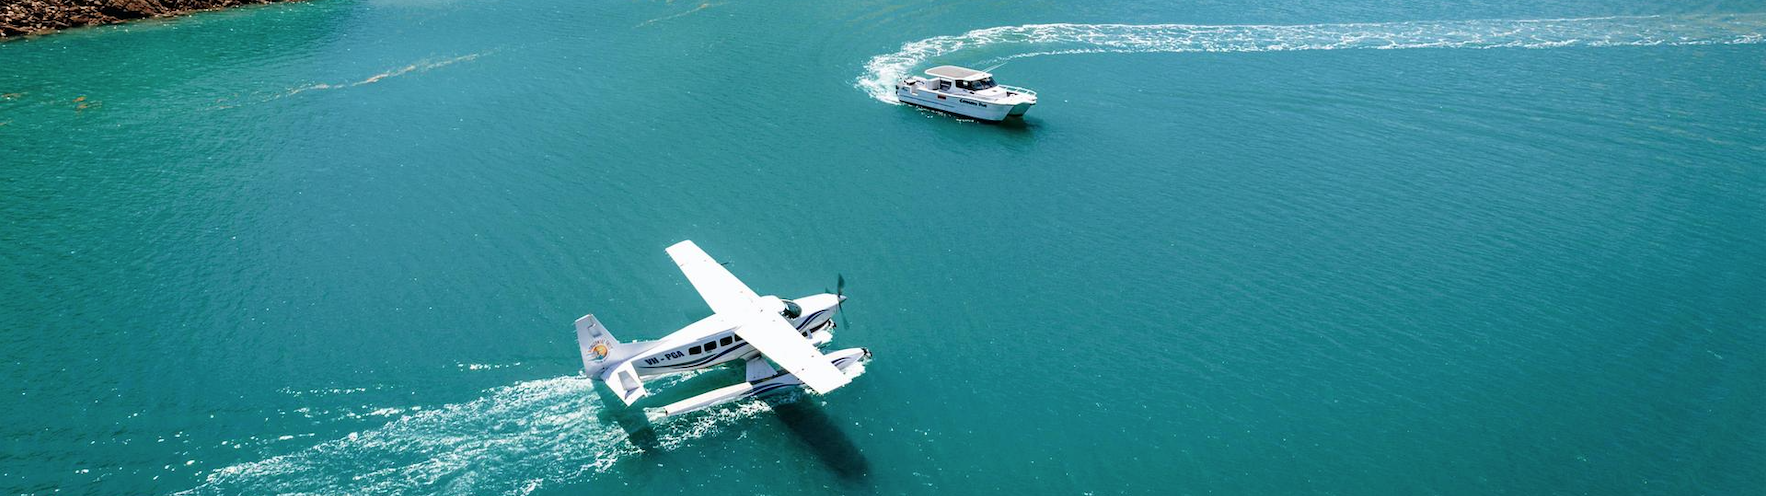 Derby Australia un aereo e una barca in acqua